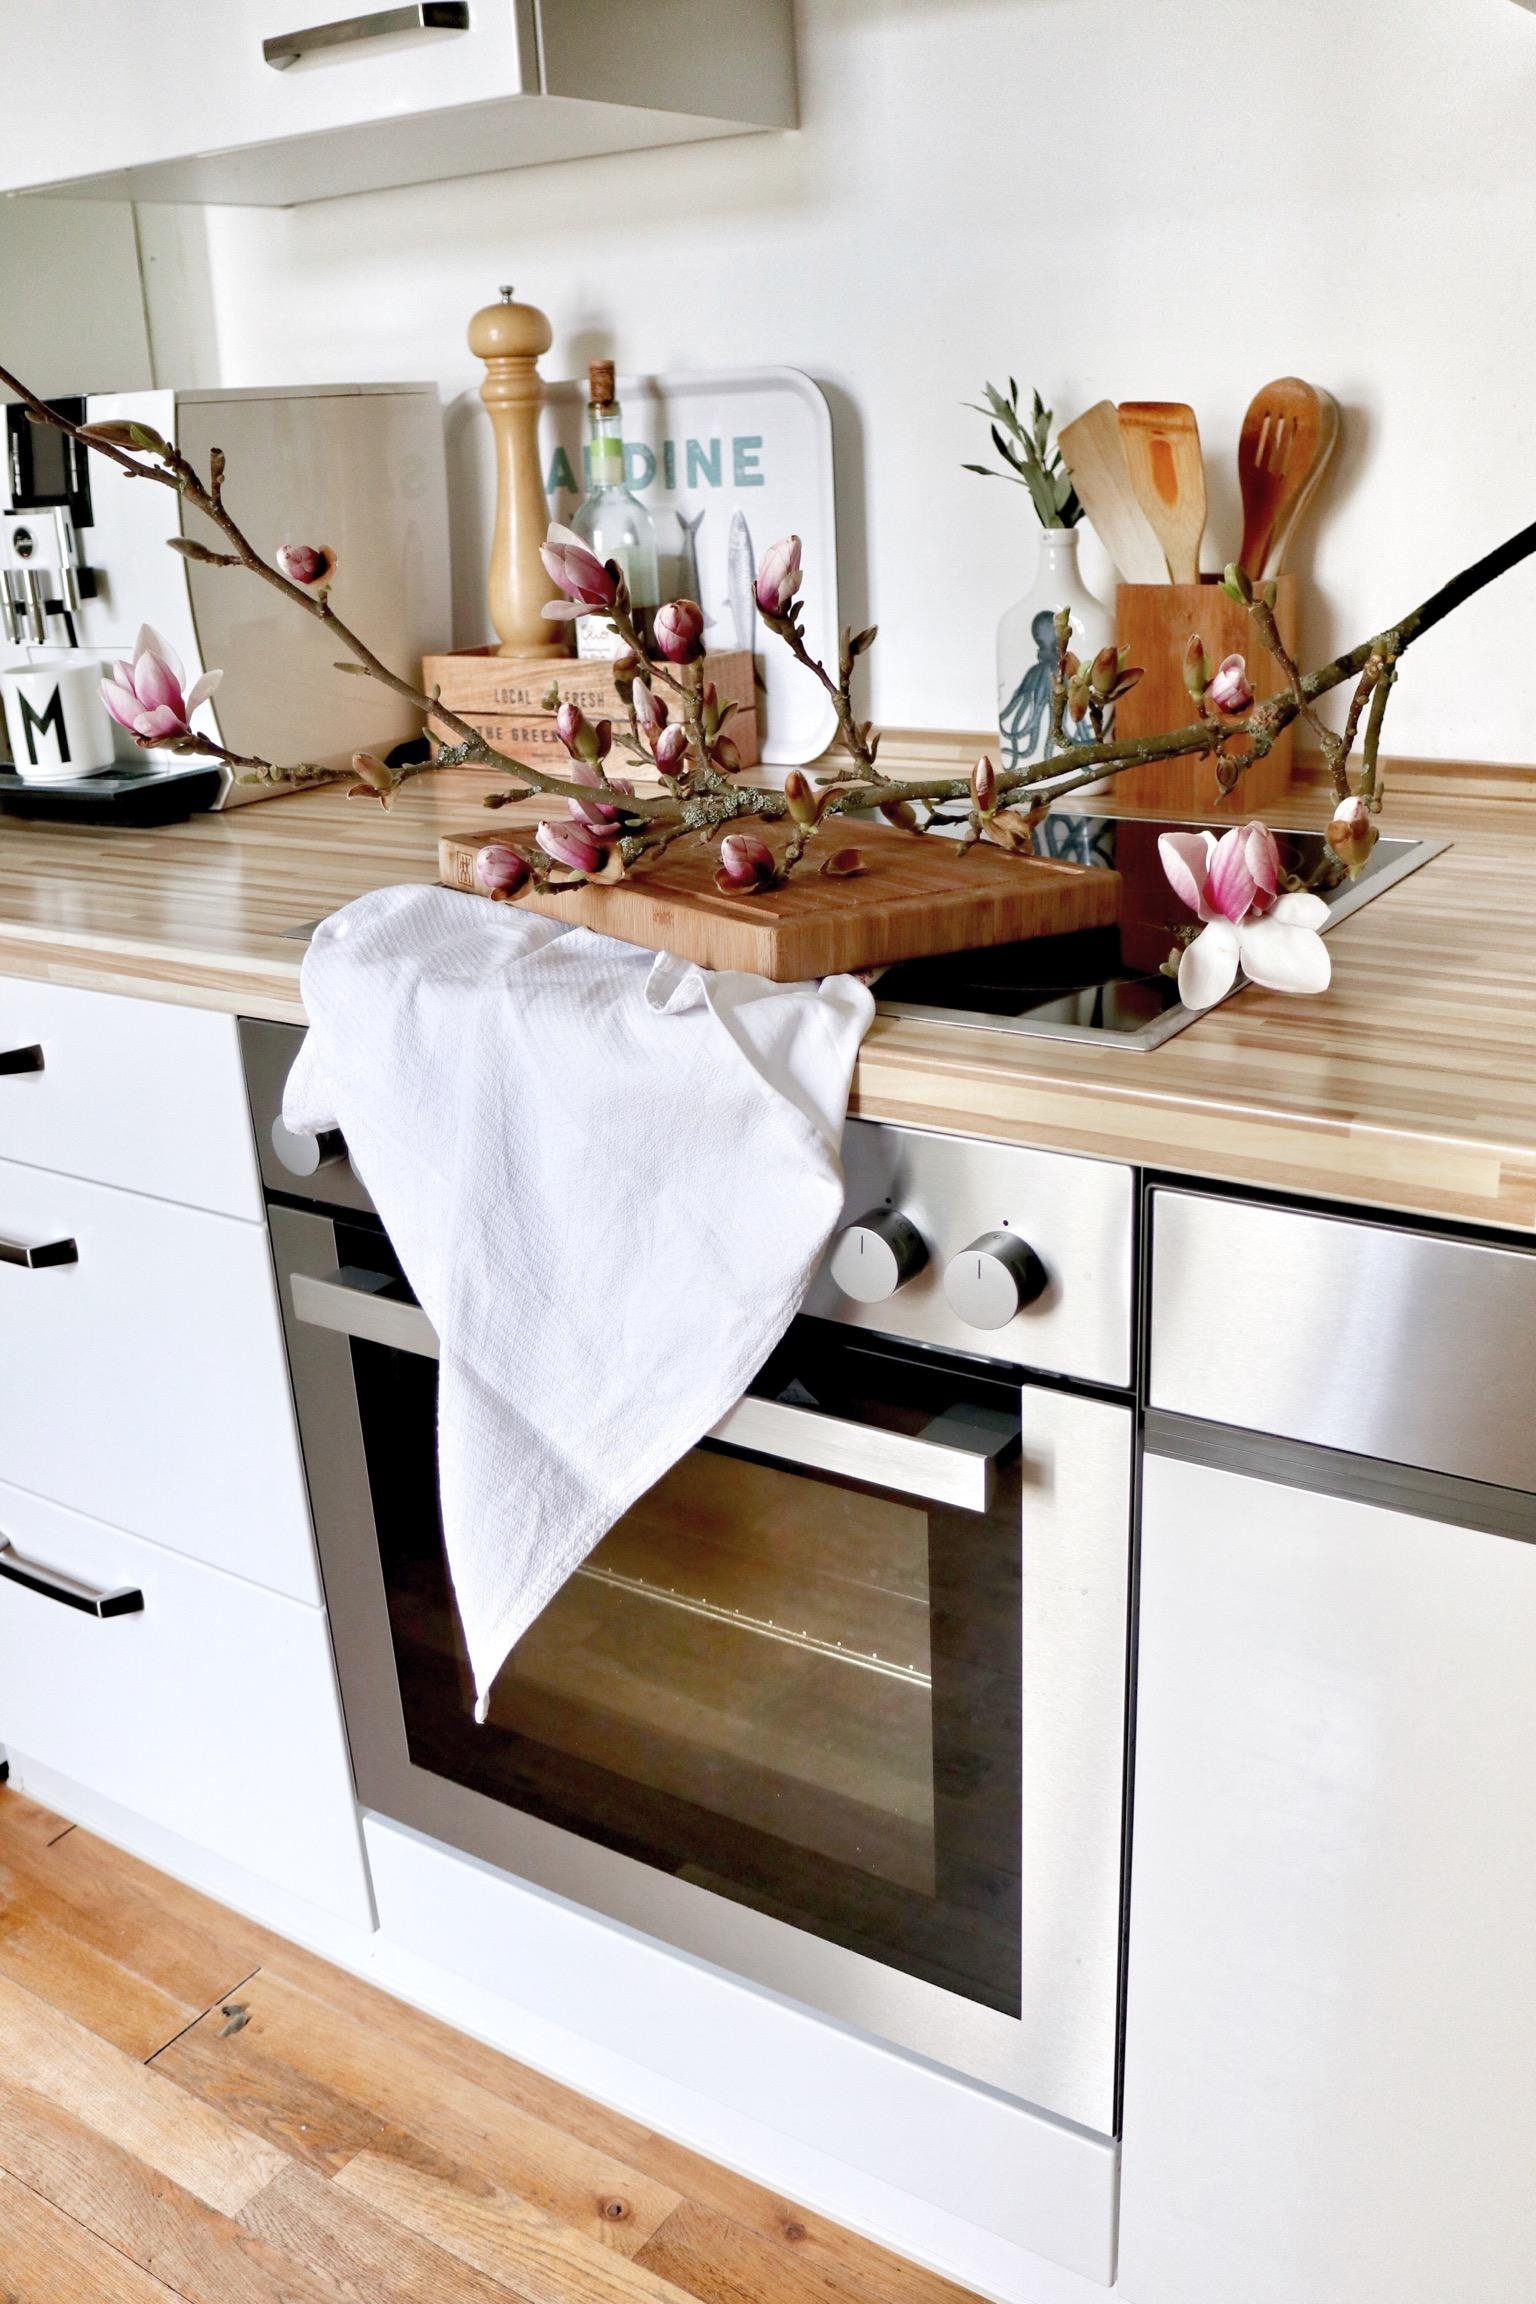 Die Küche nochmal von der anderen Seite und mit Blumenschmuck. #küche #weißeküche #holzdeko #magnolie